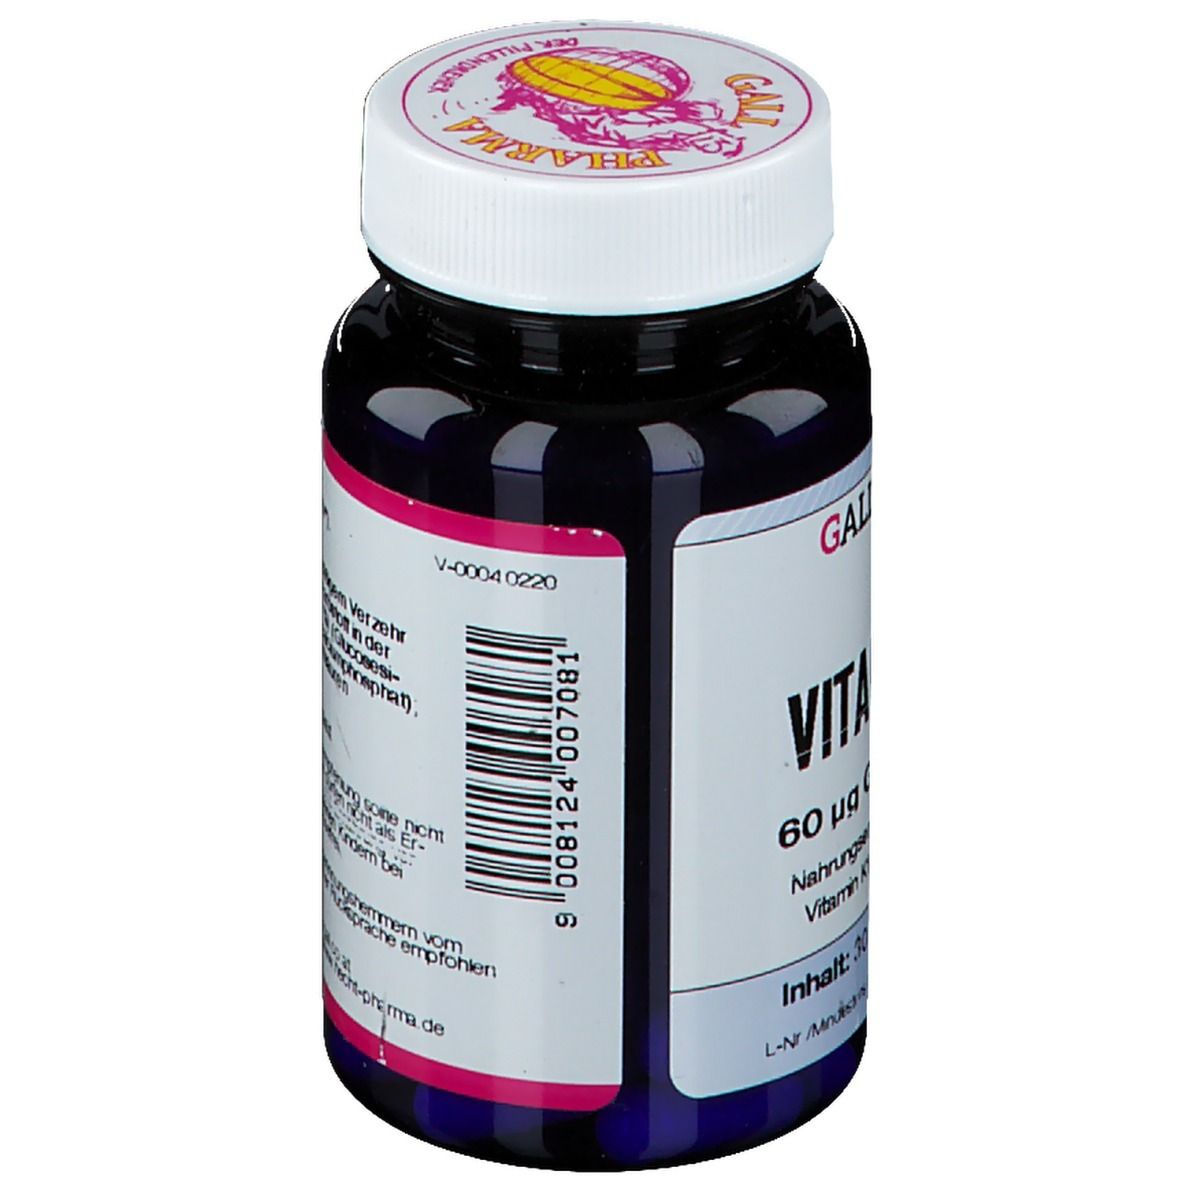 GALL PHARMA Vitamin K1 60µg GPH